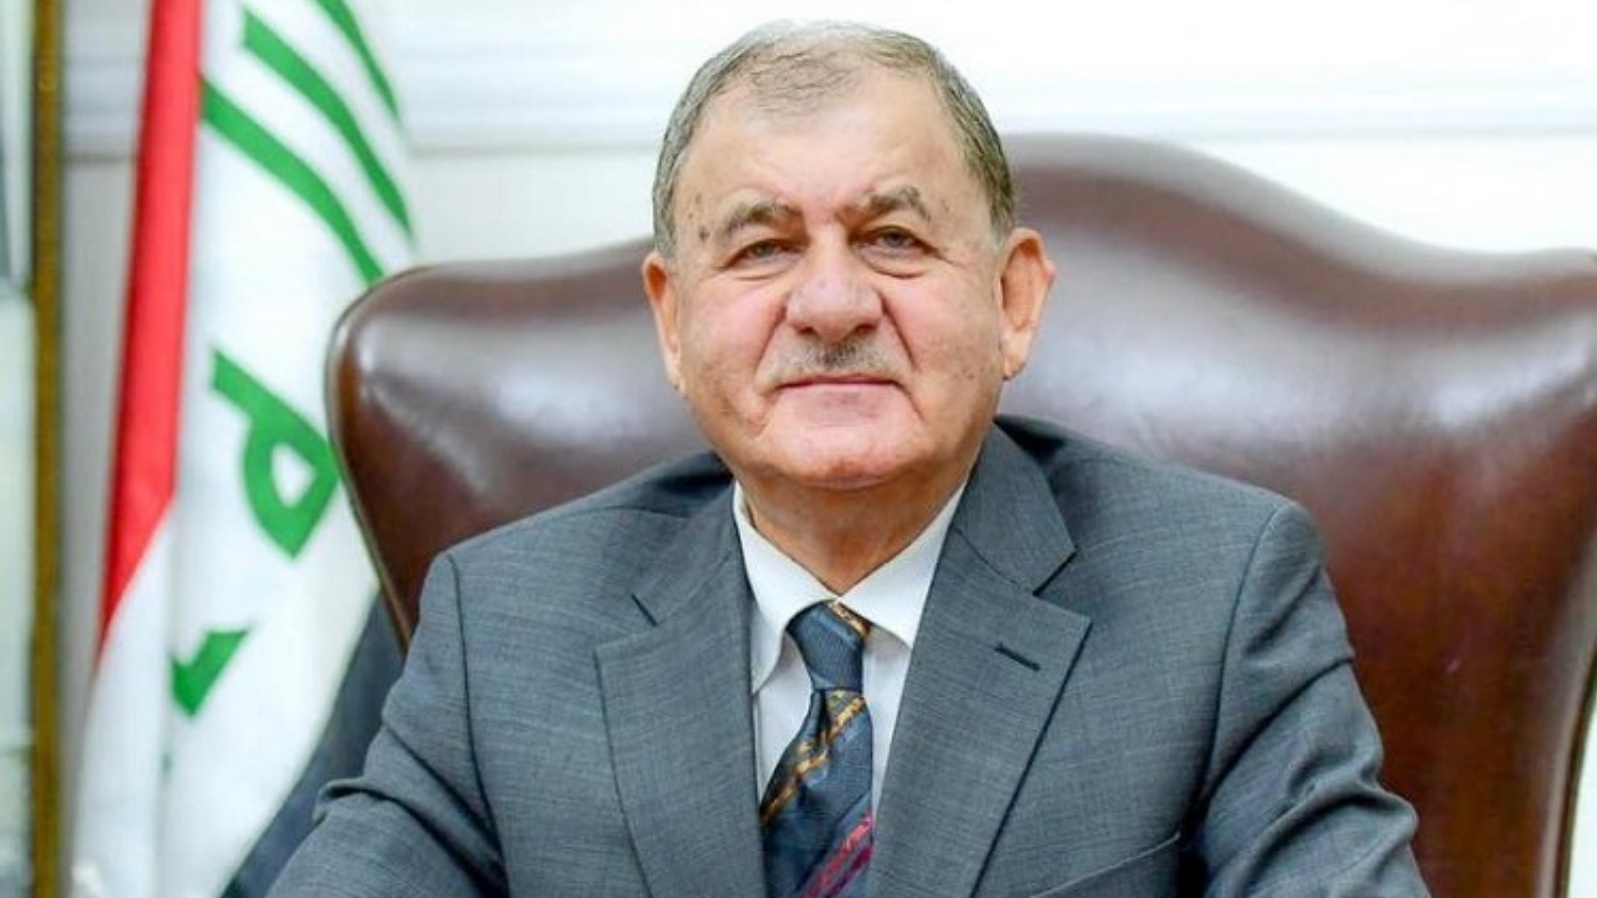 القيادي في الاتحاد الوطني الكردستاني وزير الموارد المائية الاسبق تدور معلومات حول تقديمه مرشح توسية لمنصب رئيس جمهورية العراق (تويتر)